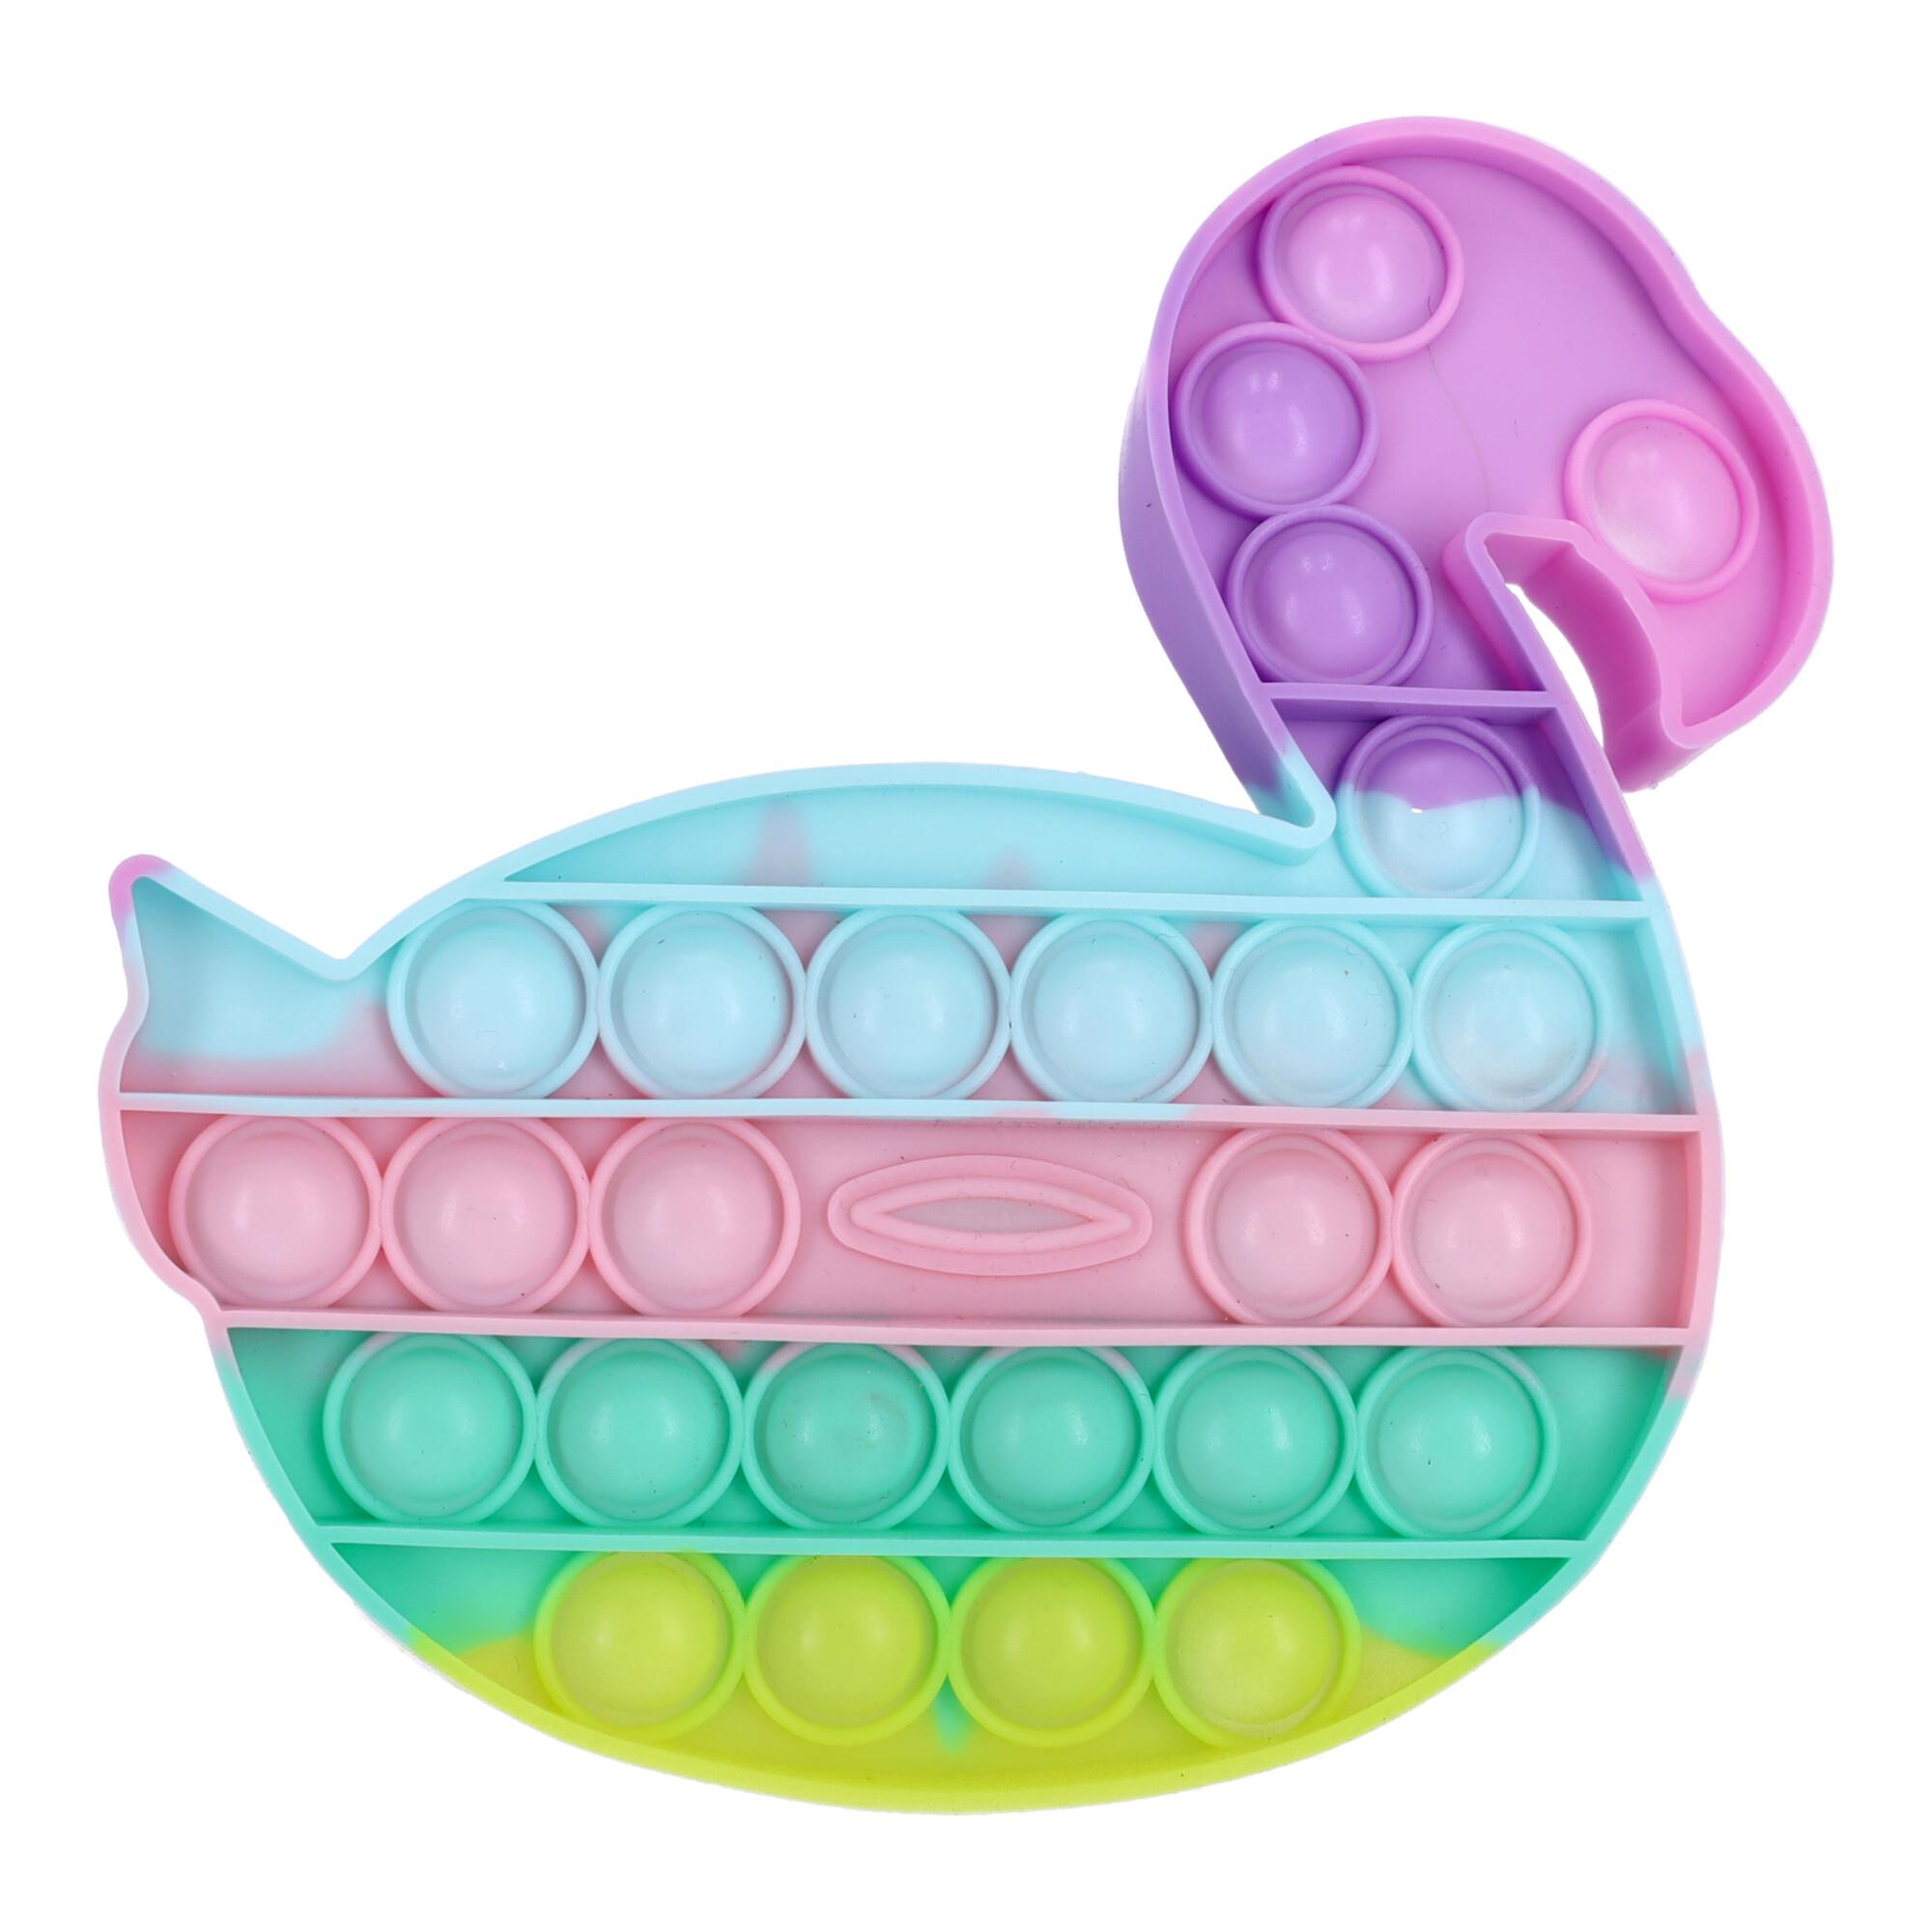 Swan-shaped anti-stress sensory toy